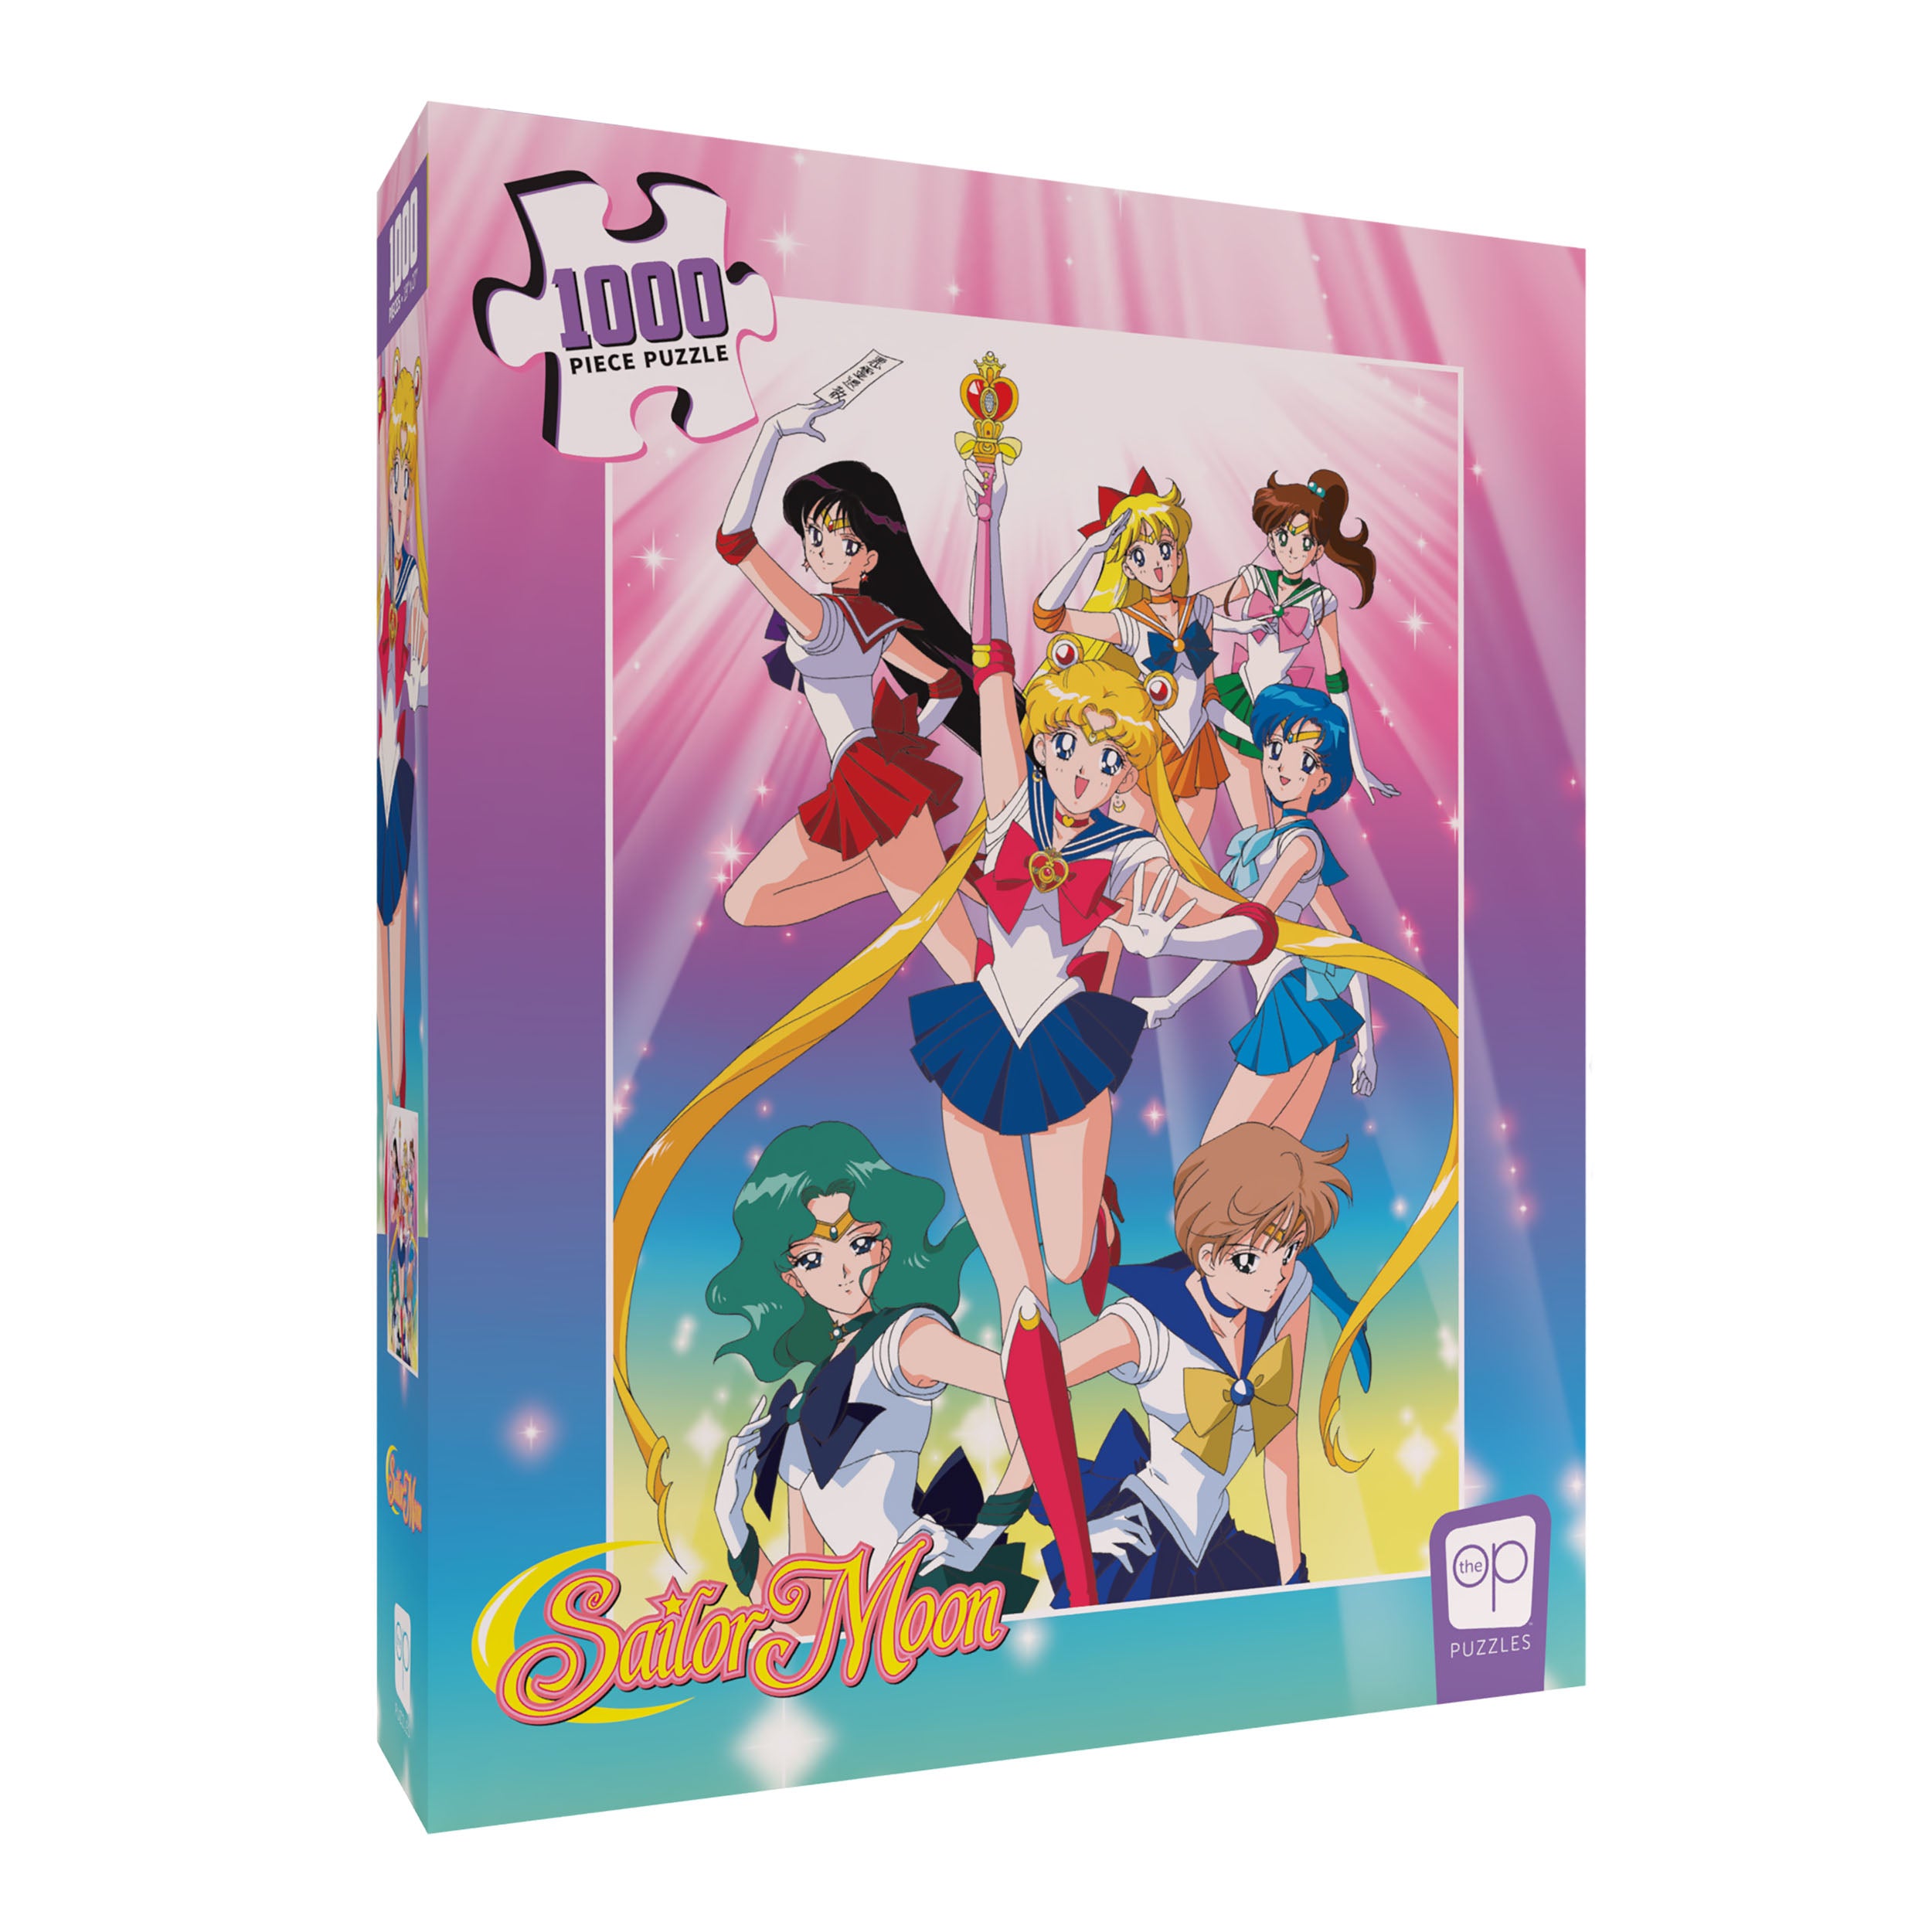 Sailor Moon: Sailor Guardians 1,000 Piece Puzzle – The Op Games